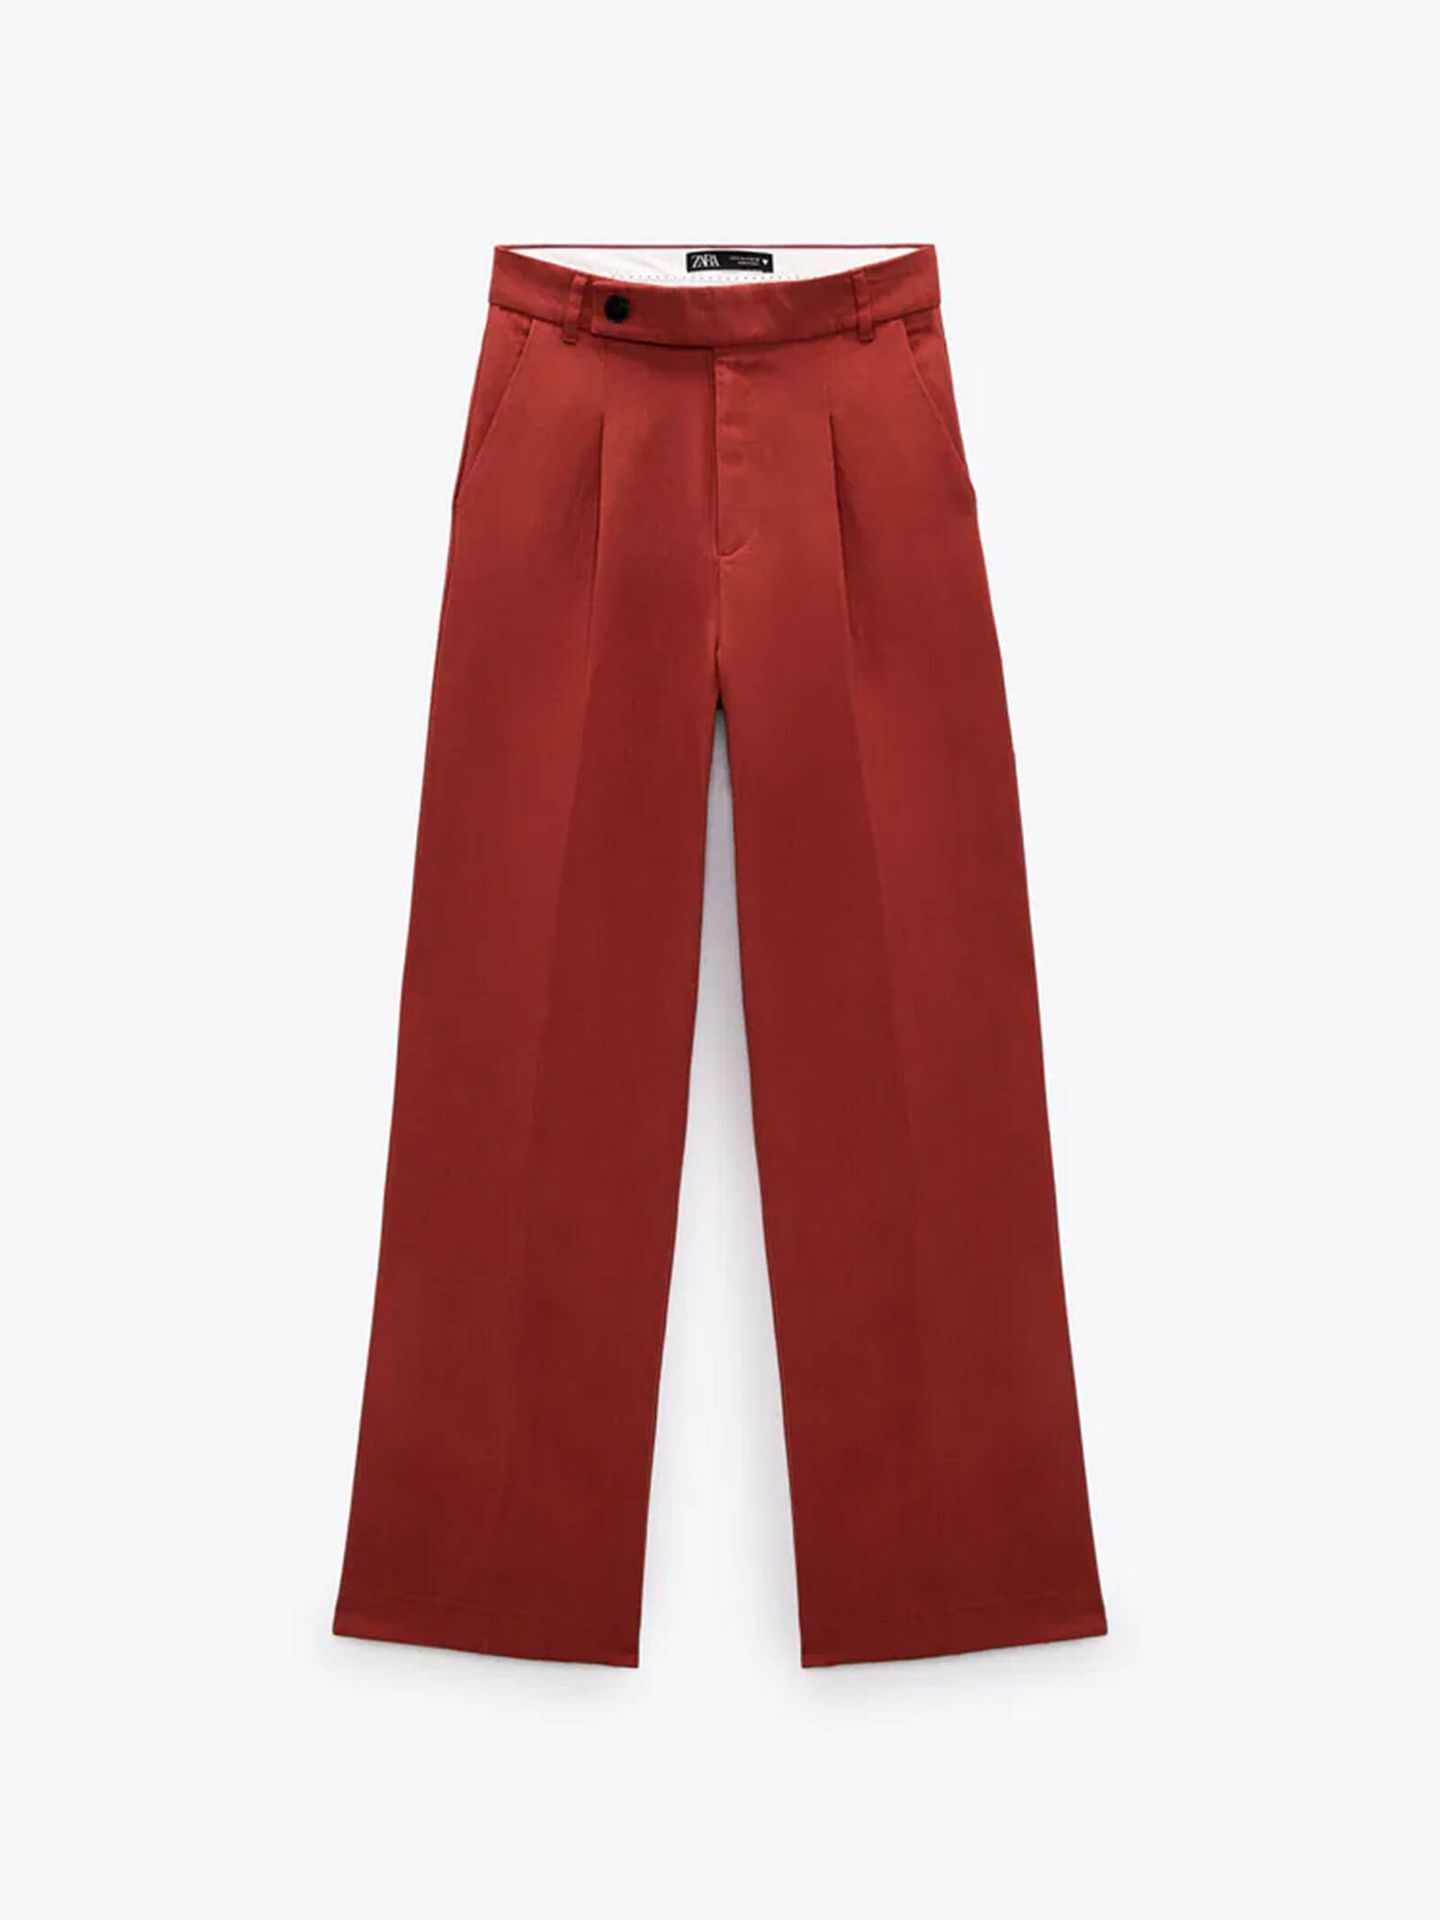 Pantalón de lino en color teja de Zara. (Cortesía) 